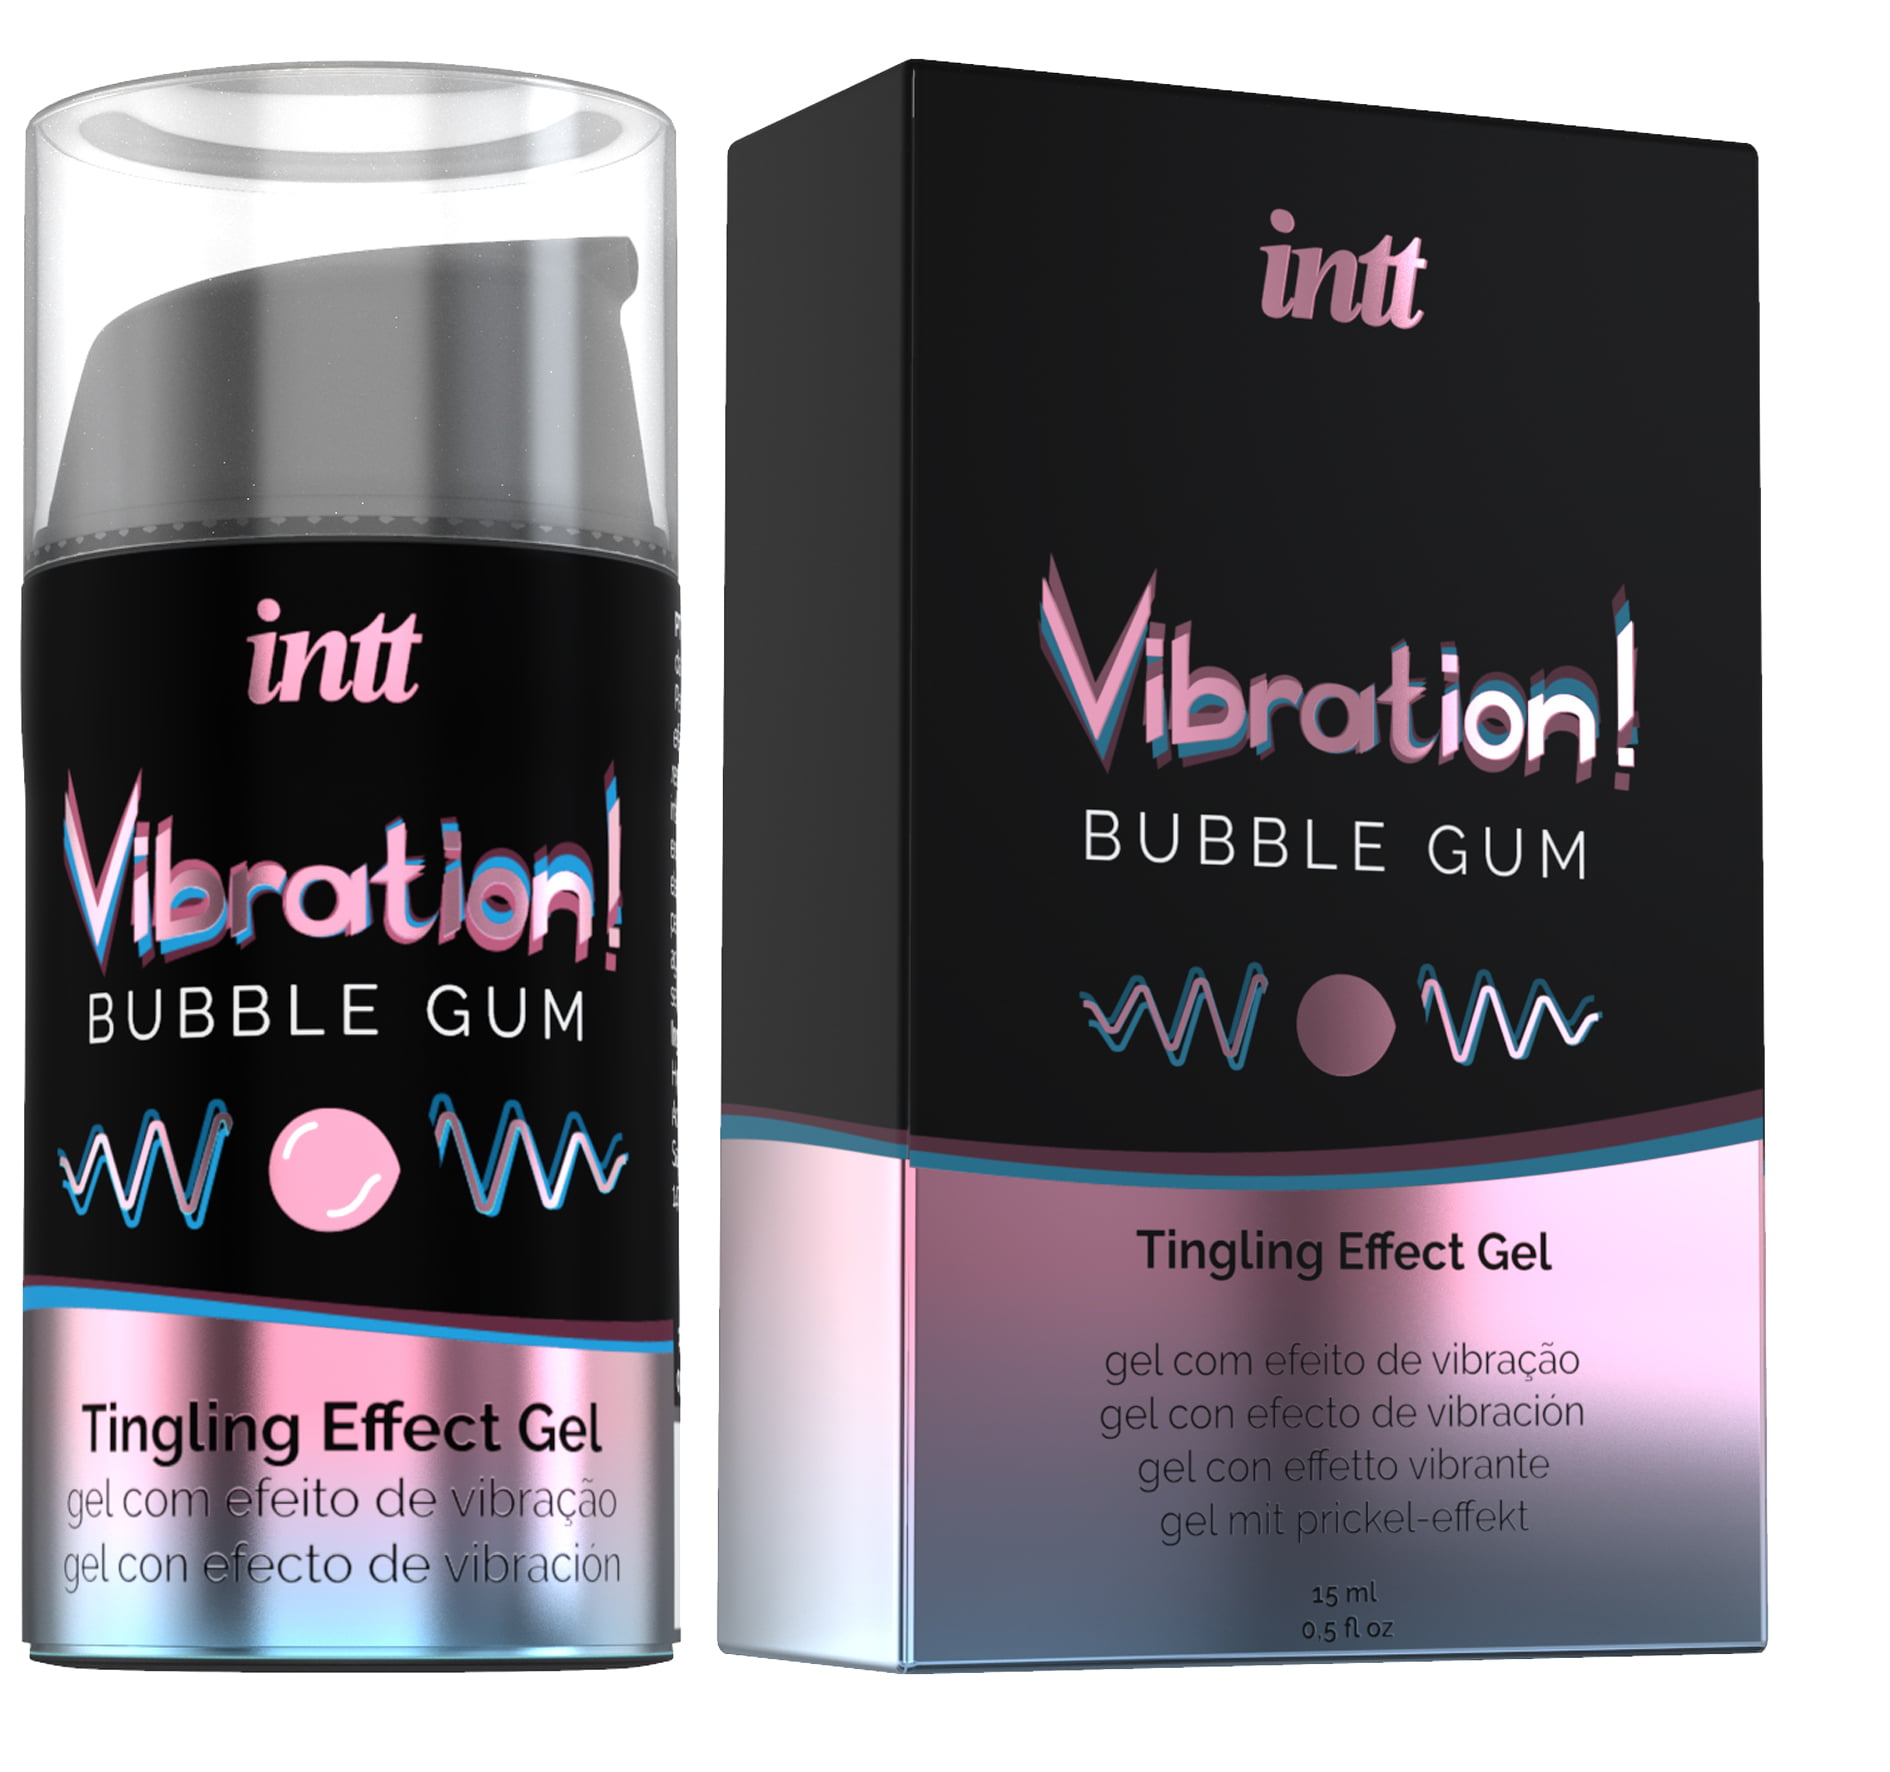 De meest complete vloeibare vibrator is nu verkrijgbaar. Het brengt golven van verwarmende, pulserende en vibrerende sensaties gedurende meer dan 30 minuten. Het product is unisex en kan worden gebruikt voor penetratie, masturbatie, zoenen en ook orale seks vanwege de heerlijke Bubble Gum-smaak.